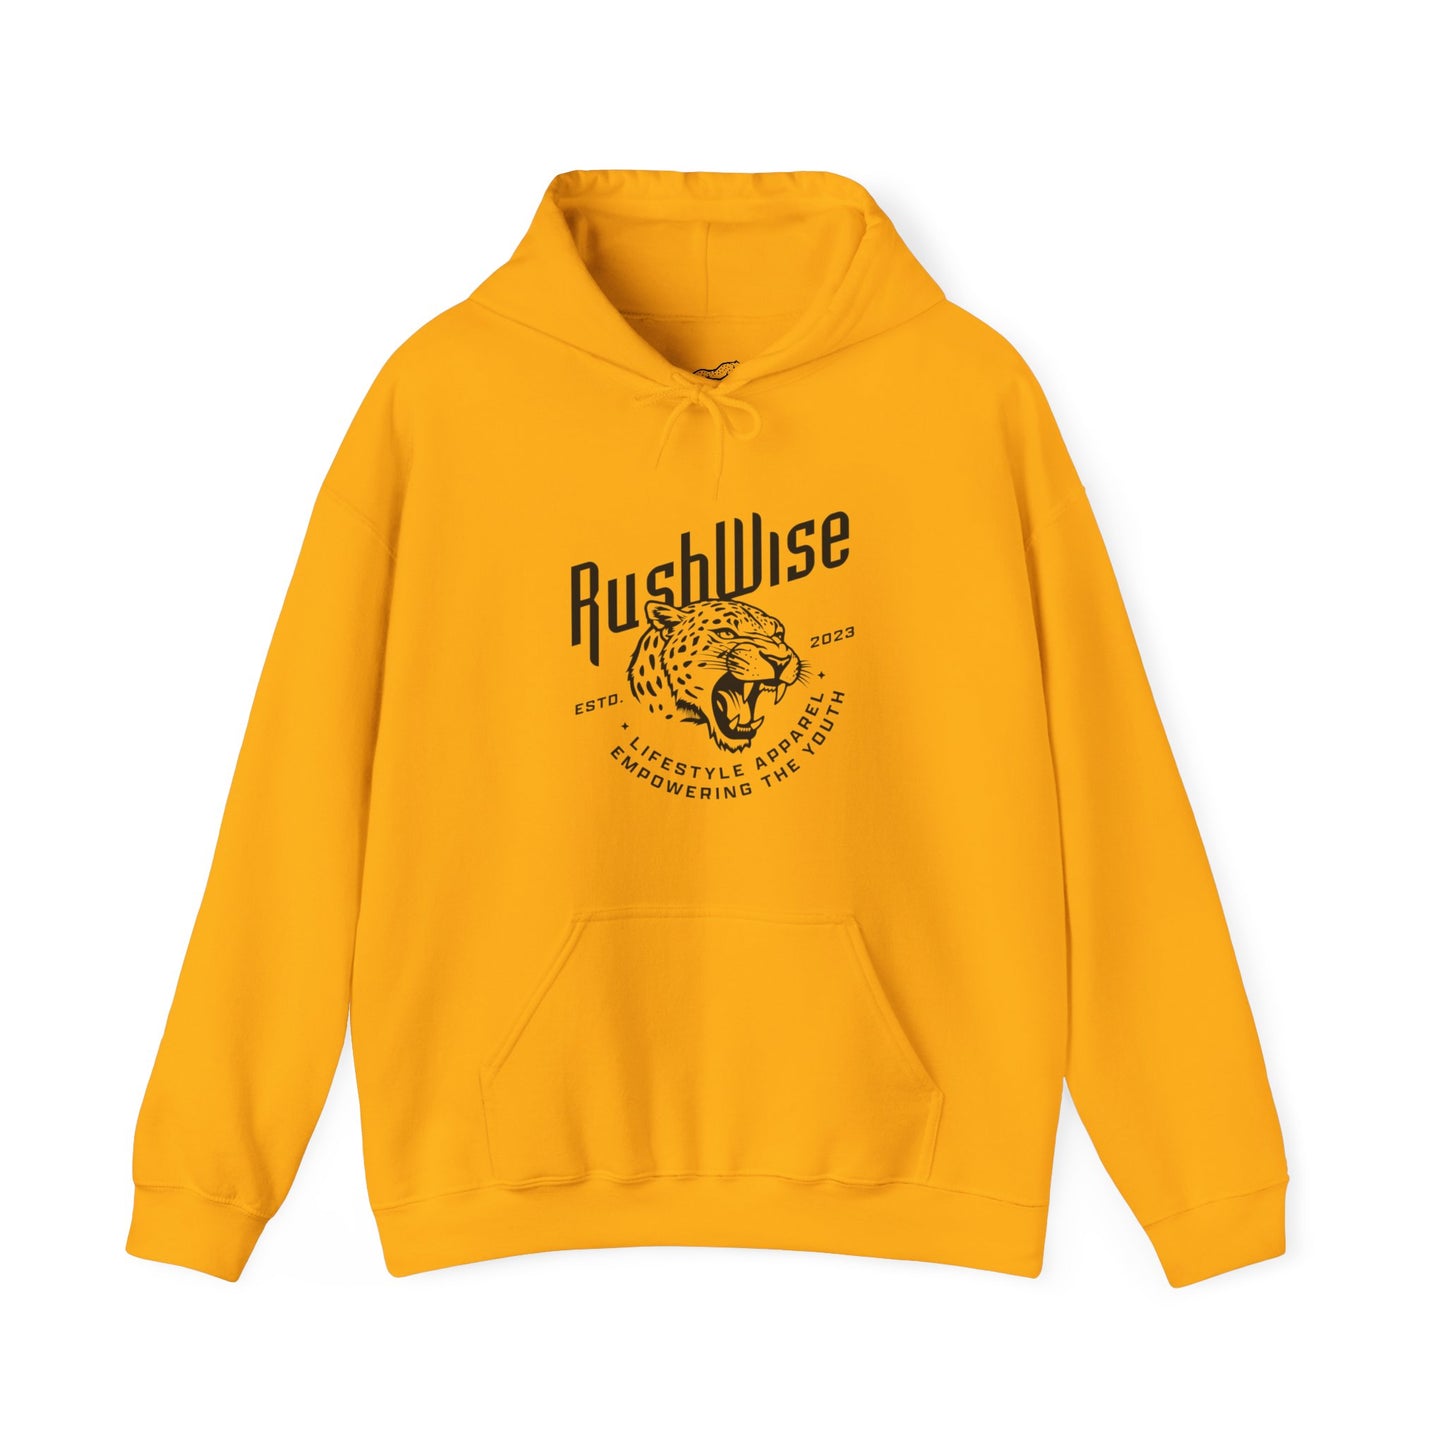 RushWise Unisex Hooded Sweatshirt